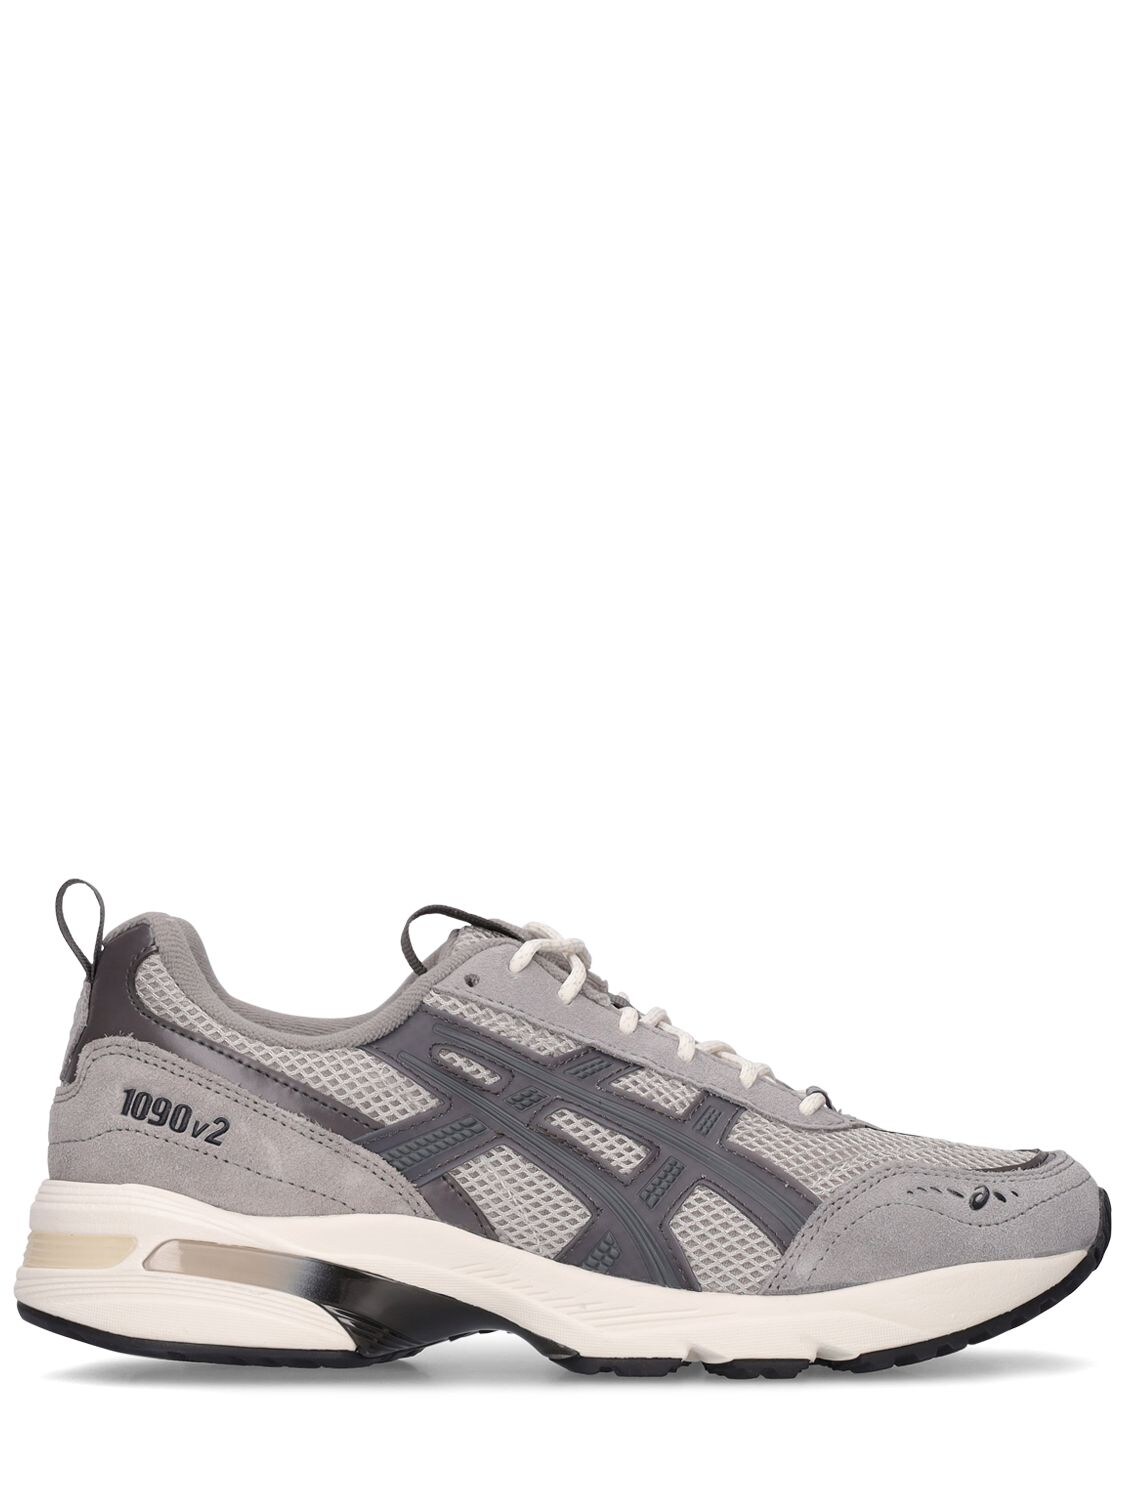 Asics Gel-1090v2 Sneakers In Grey,black